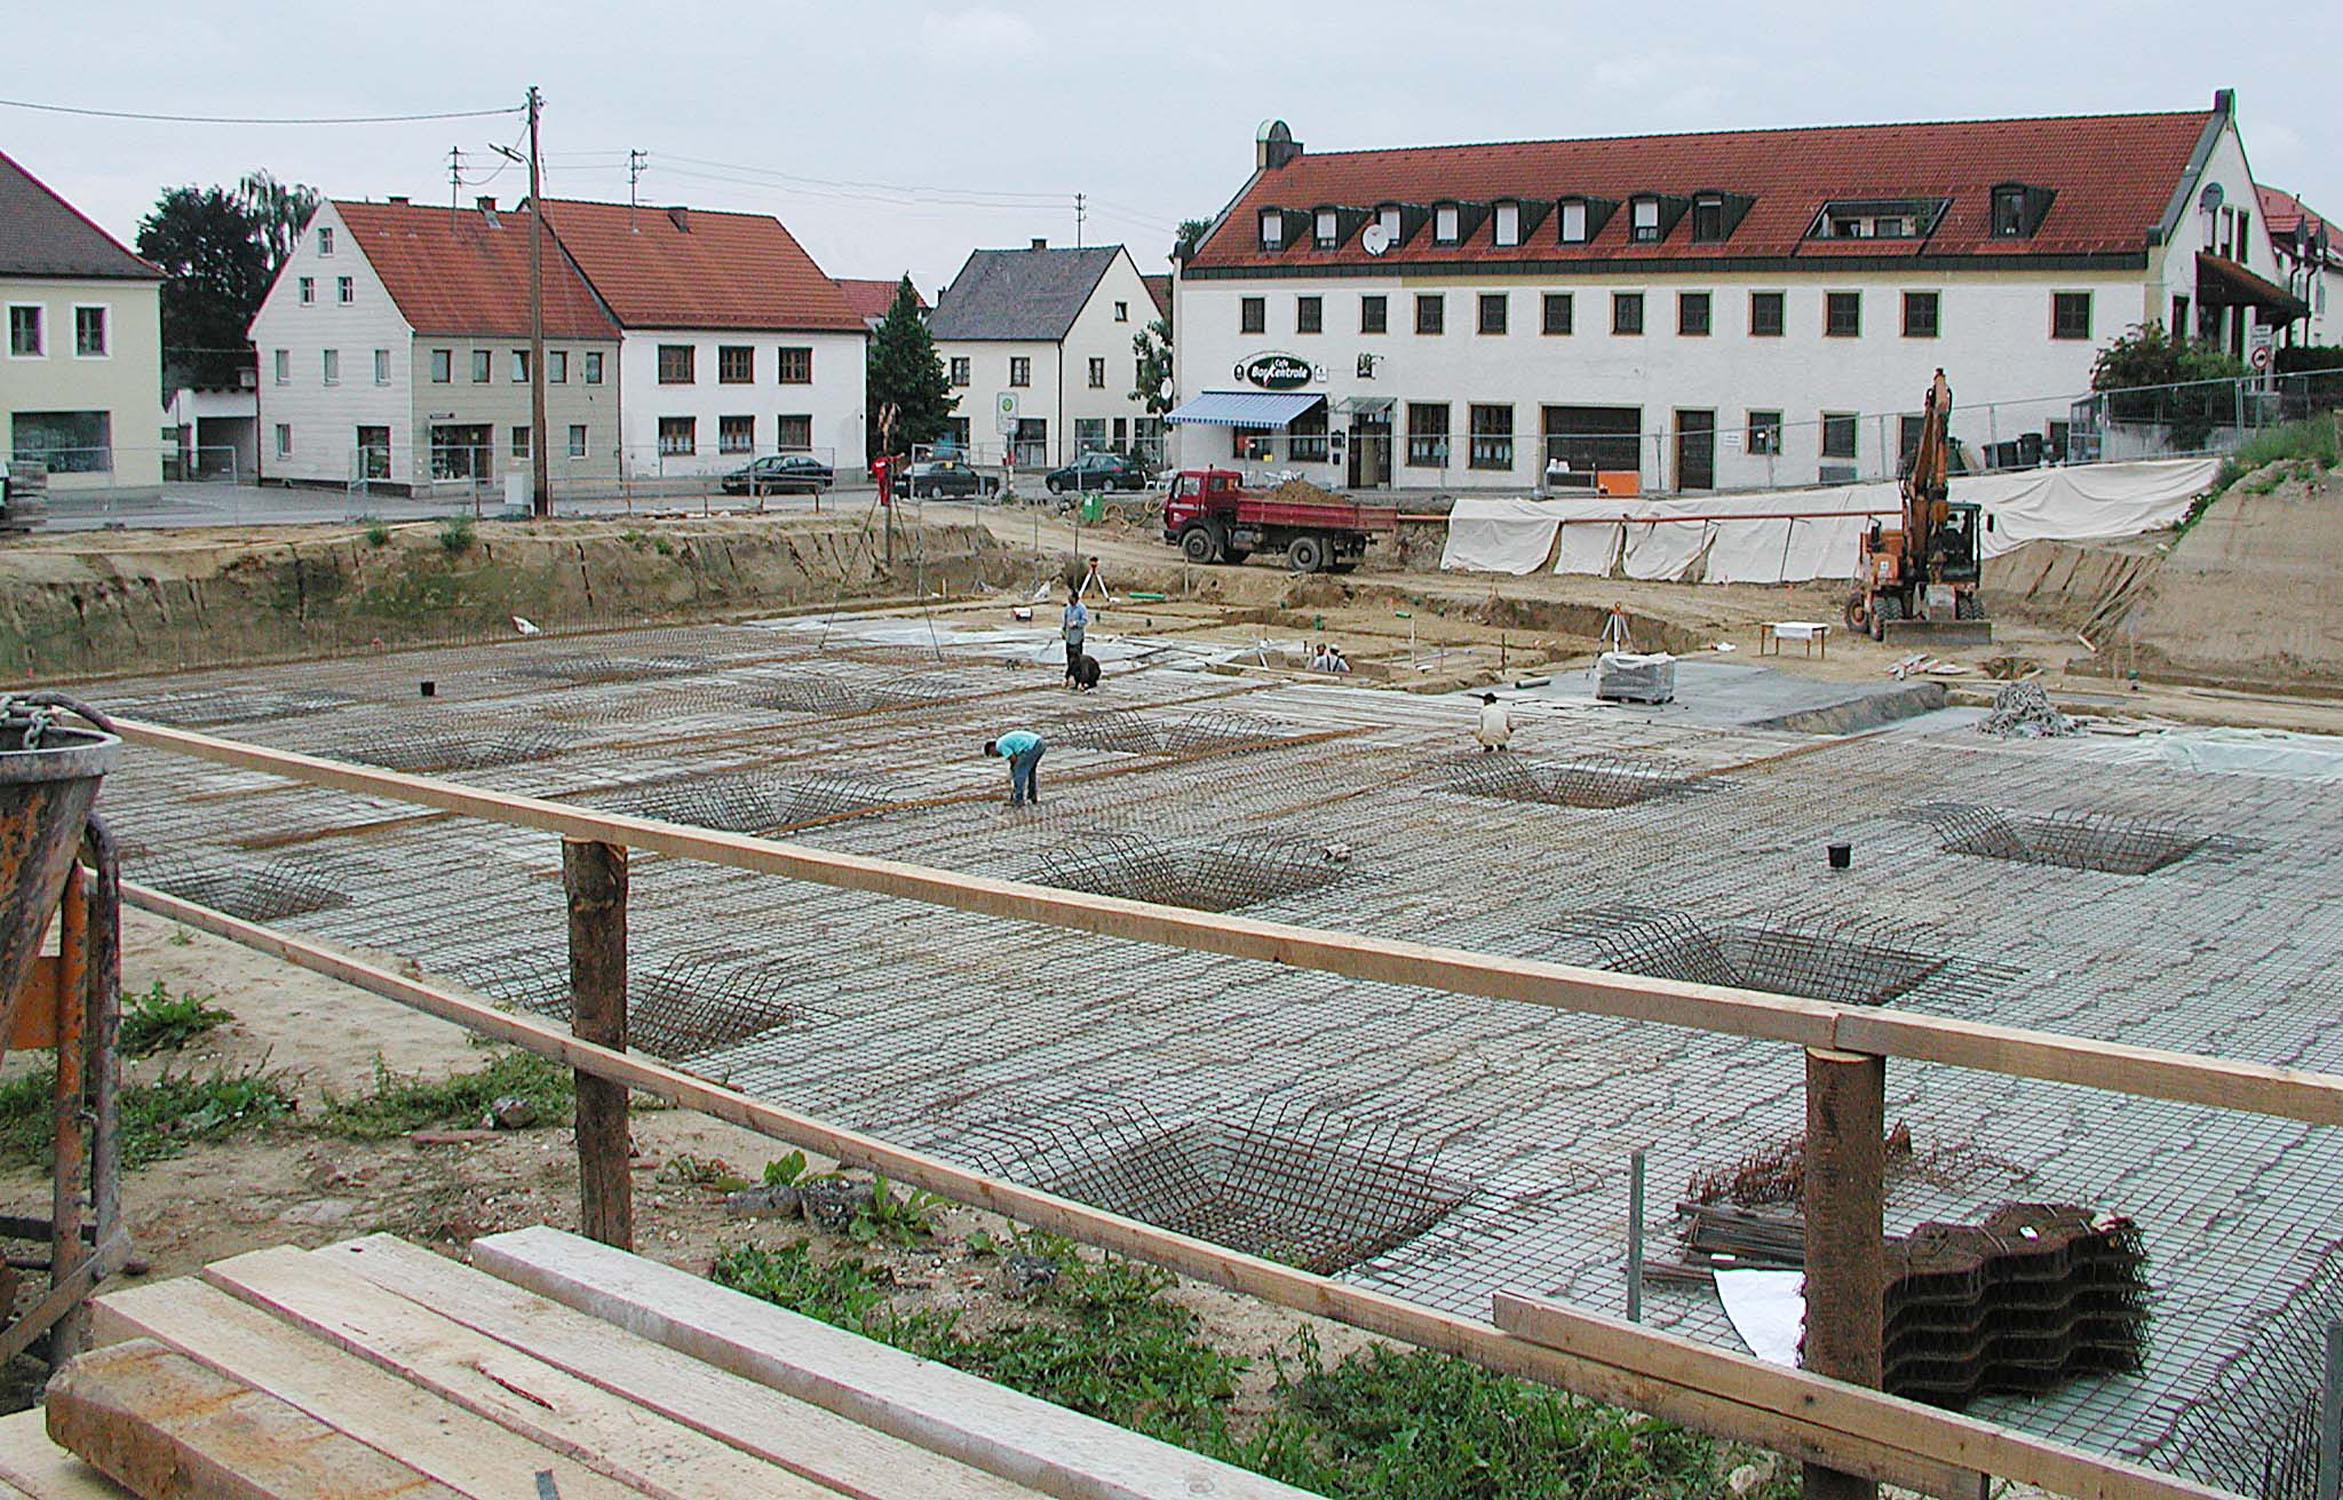 Construction site 2002